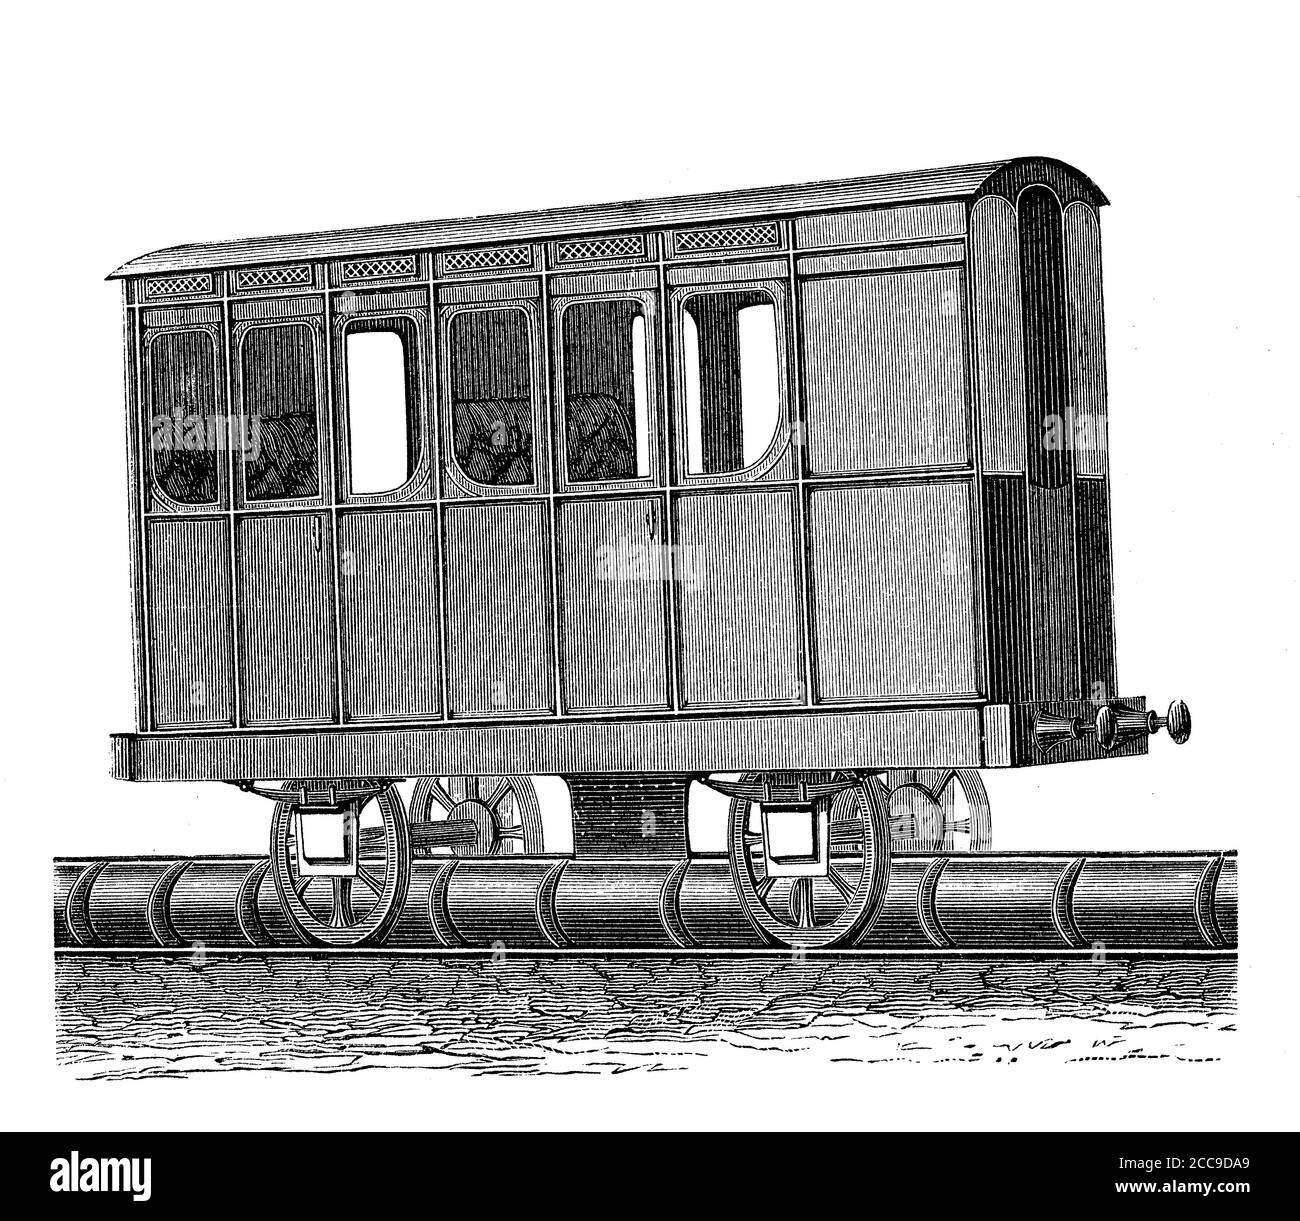 Die stimmungsvolle Eisenbahn von Saint Germain in Paris mit Kolbenwagen wurde 1837 mit Erfolg mit einer 19 km langen Strecke eröffnet, 1860 jedoch mit der Einführung von Dampflokomotiven aufgegeben Stockfoto